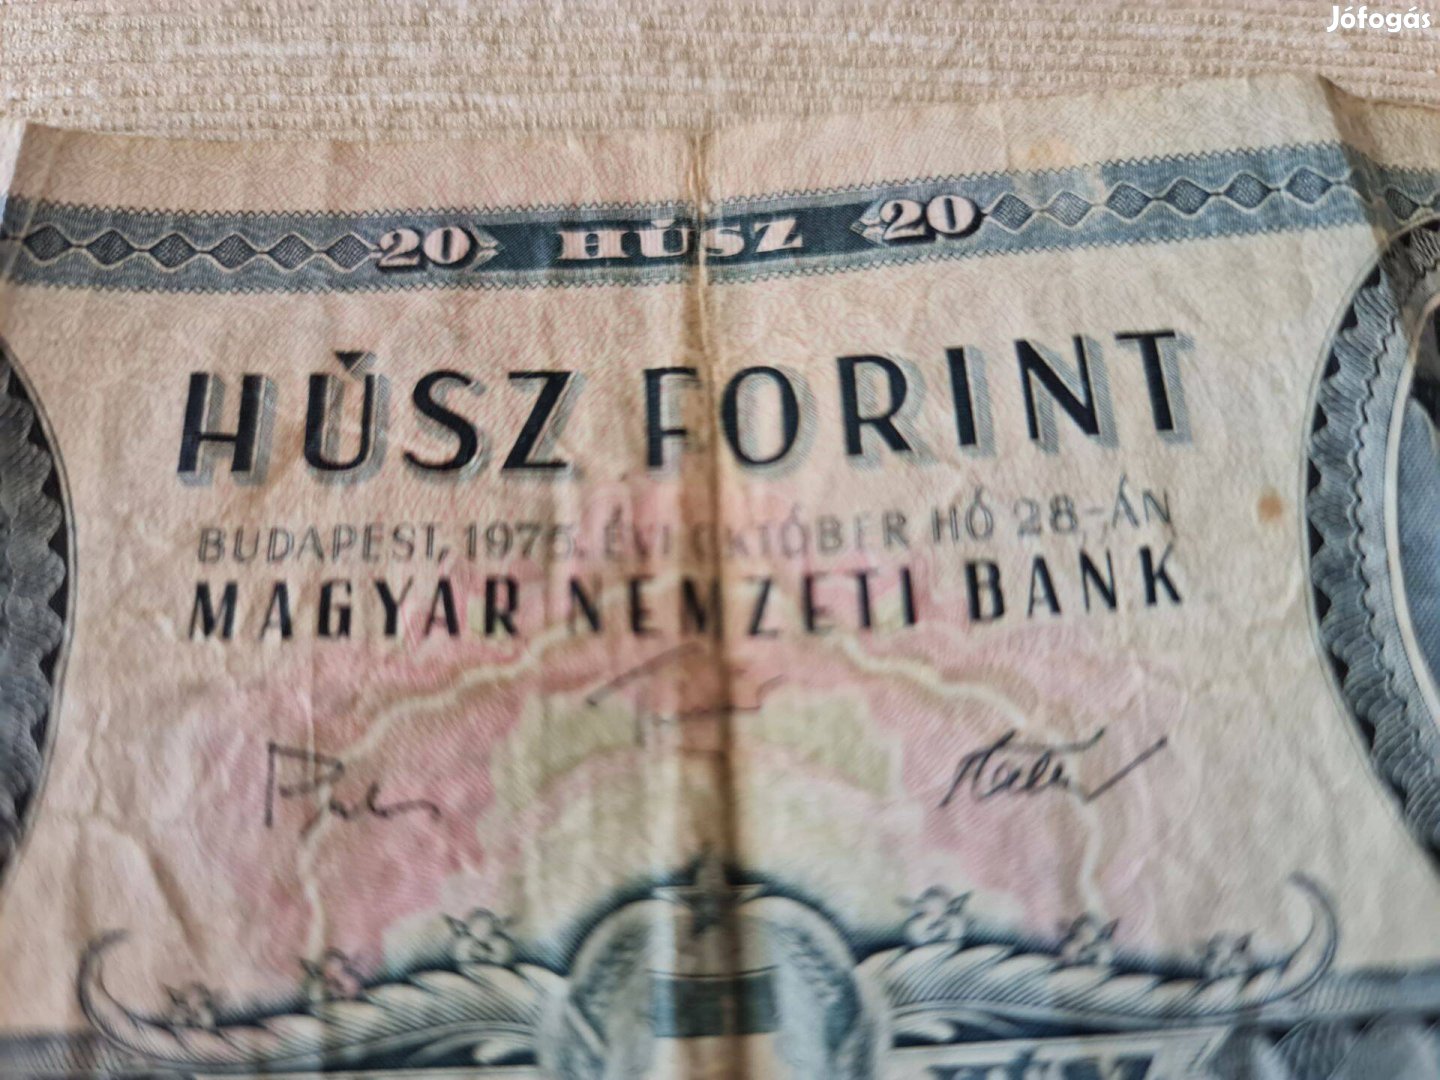 Húsz forintos bankjegy 1975-ből